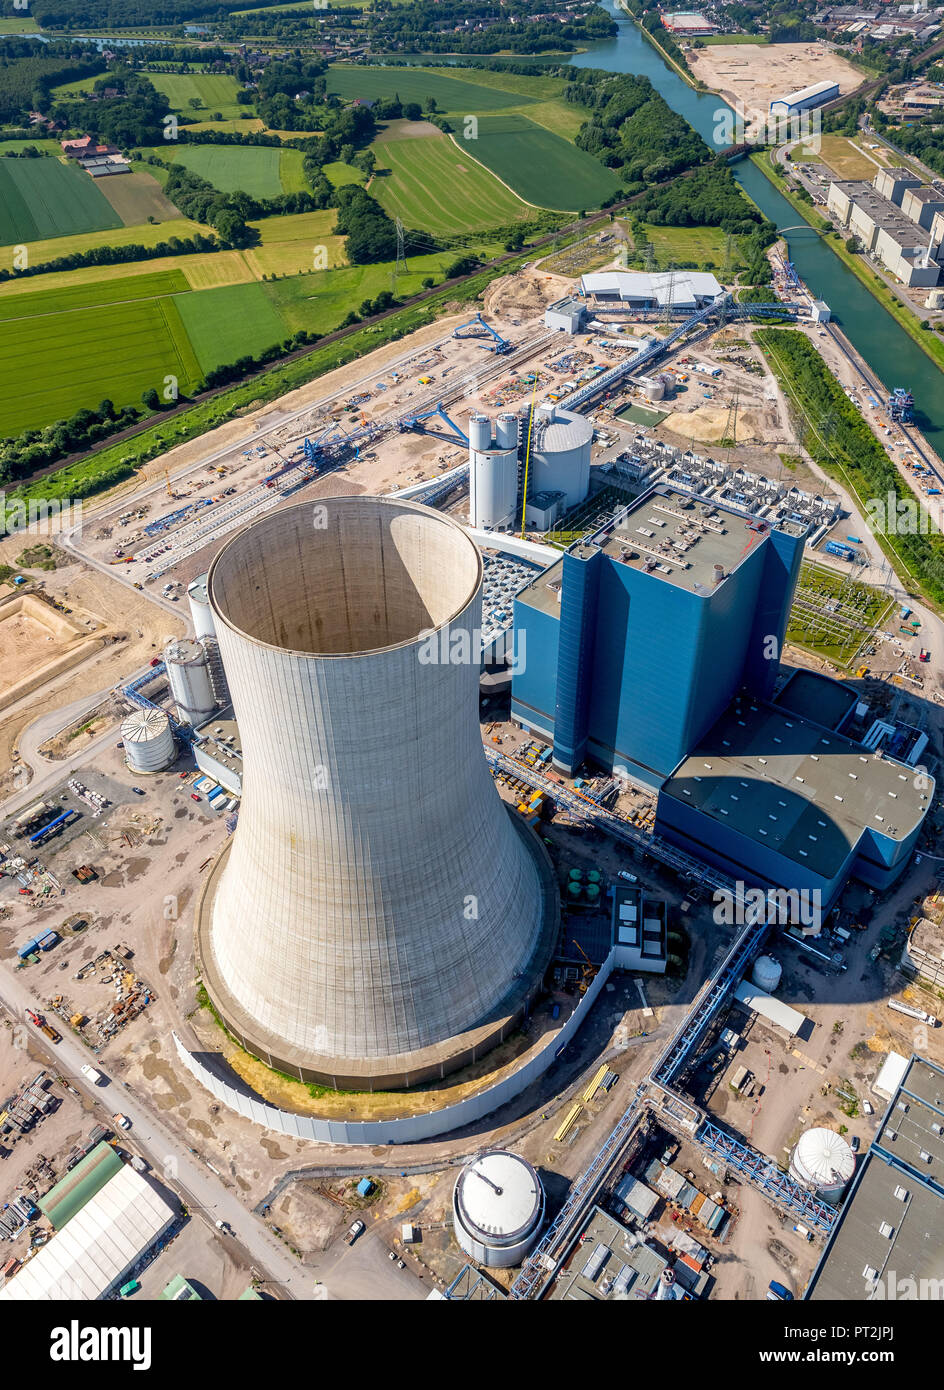 Impianto di alimentazione Datteln 4, carbone power station, continuando la costruzione dopo costruzione freeze, Datteln, la zona della Ruhr, Nord Reno-Westfalia, Germania Foto Stock